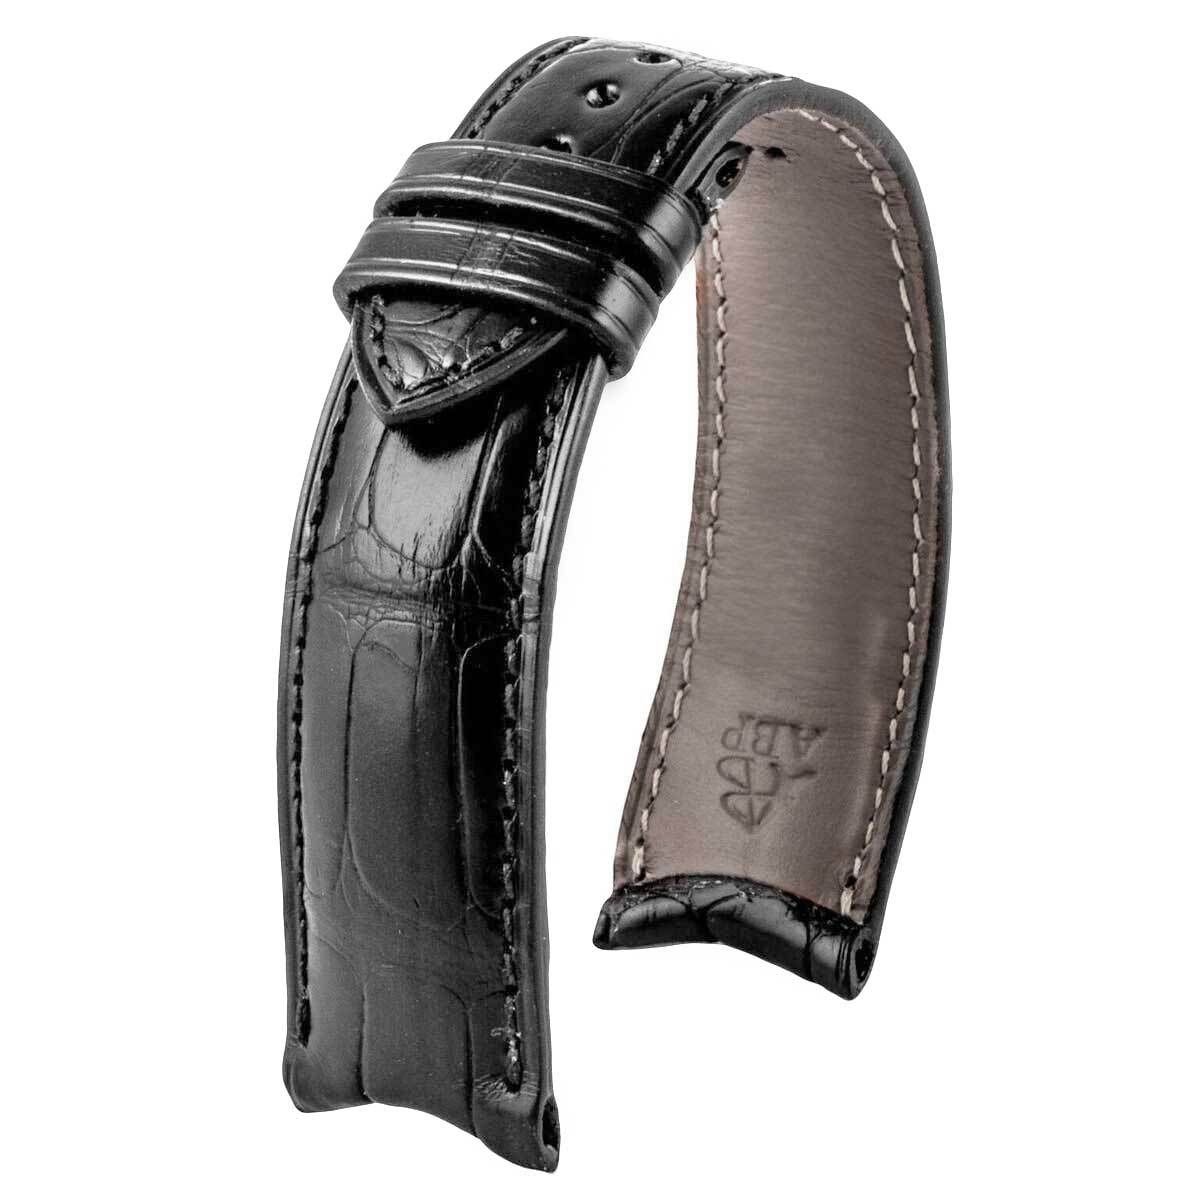 Anses courbes - Bracelet-montre cuir - Alligator (noir, marron, gris, bleu) - watch band leather strap - ABP Concept -